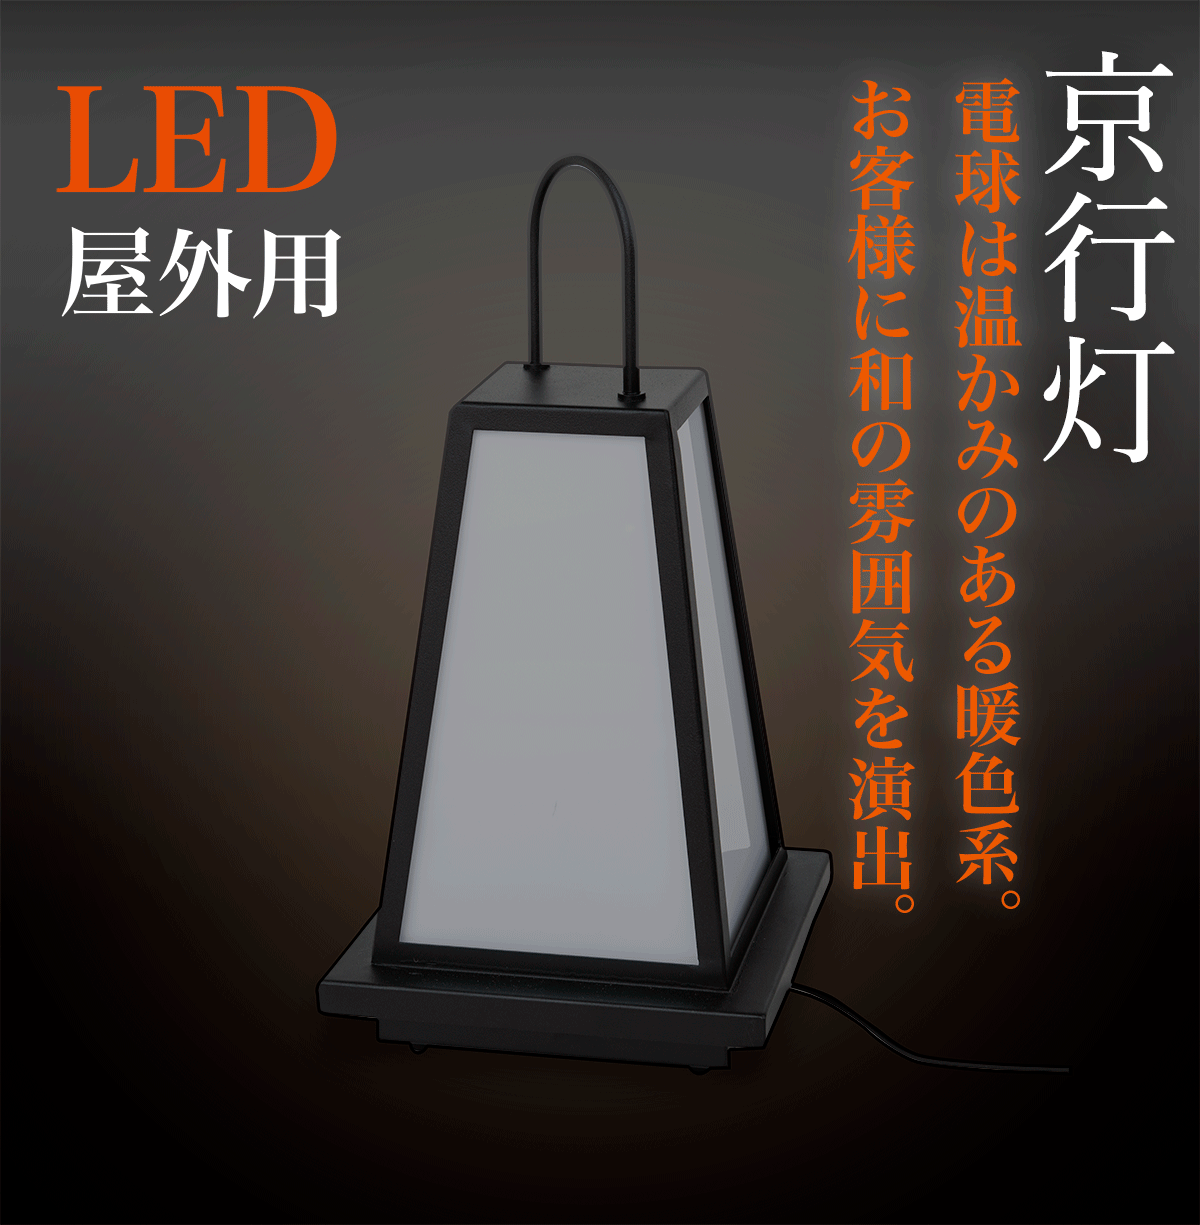 LED京行灯 和風 屋外使用可 Mサイズ - 店舗用品のミセダス